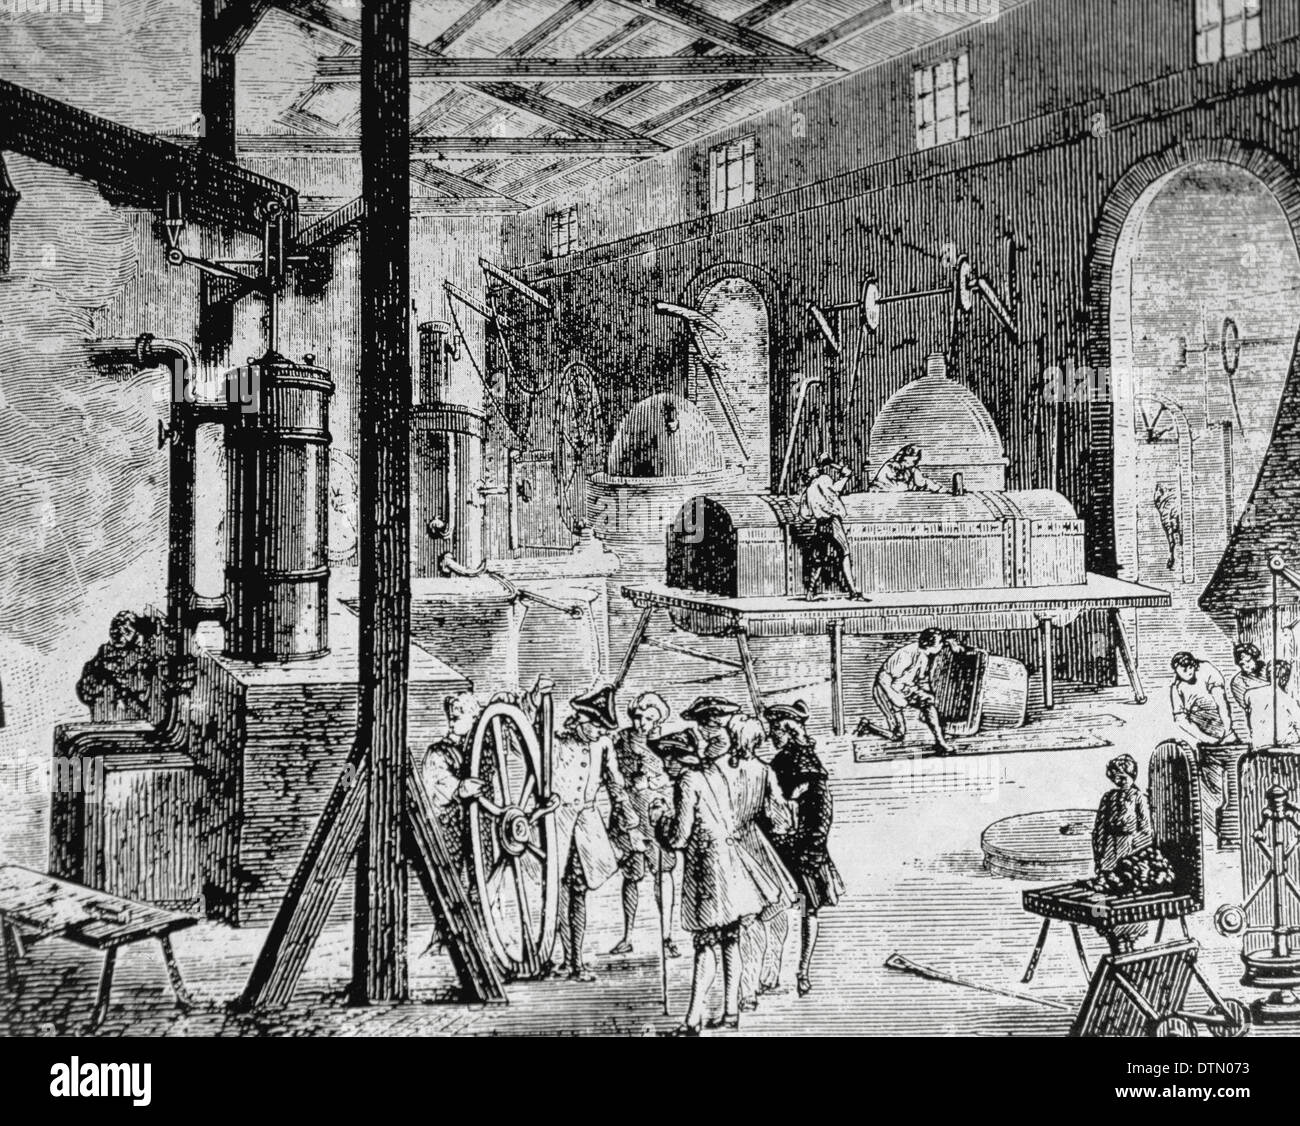 Industrielle Revolution. London. Innenraum eines englischen Fabrik. Ende des 18. Jahrhunderts. Gravur. Stockfoto